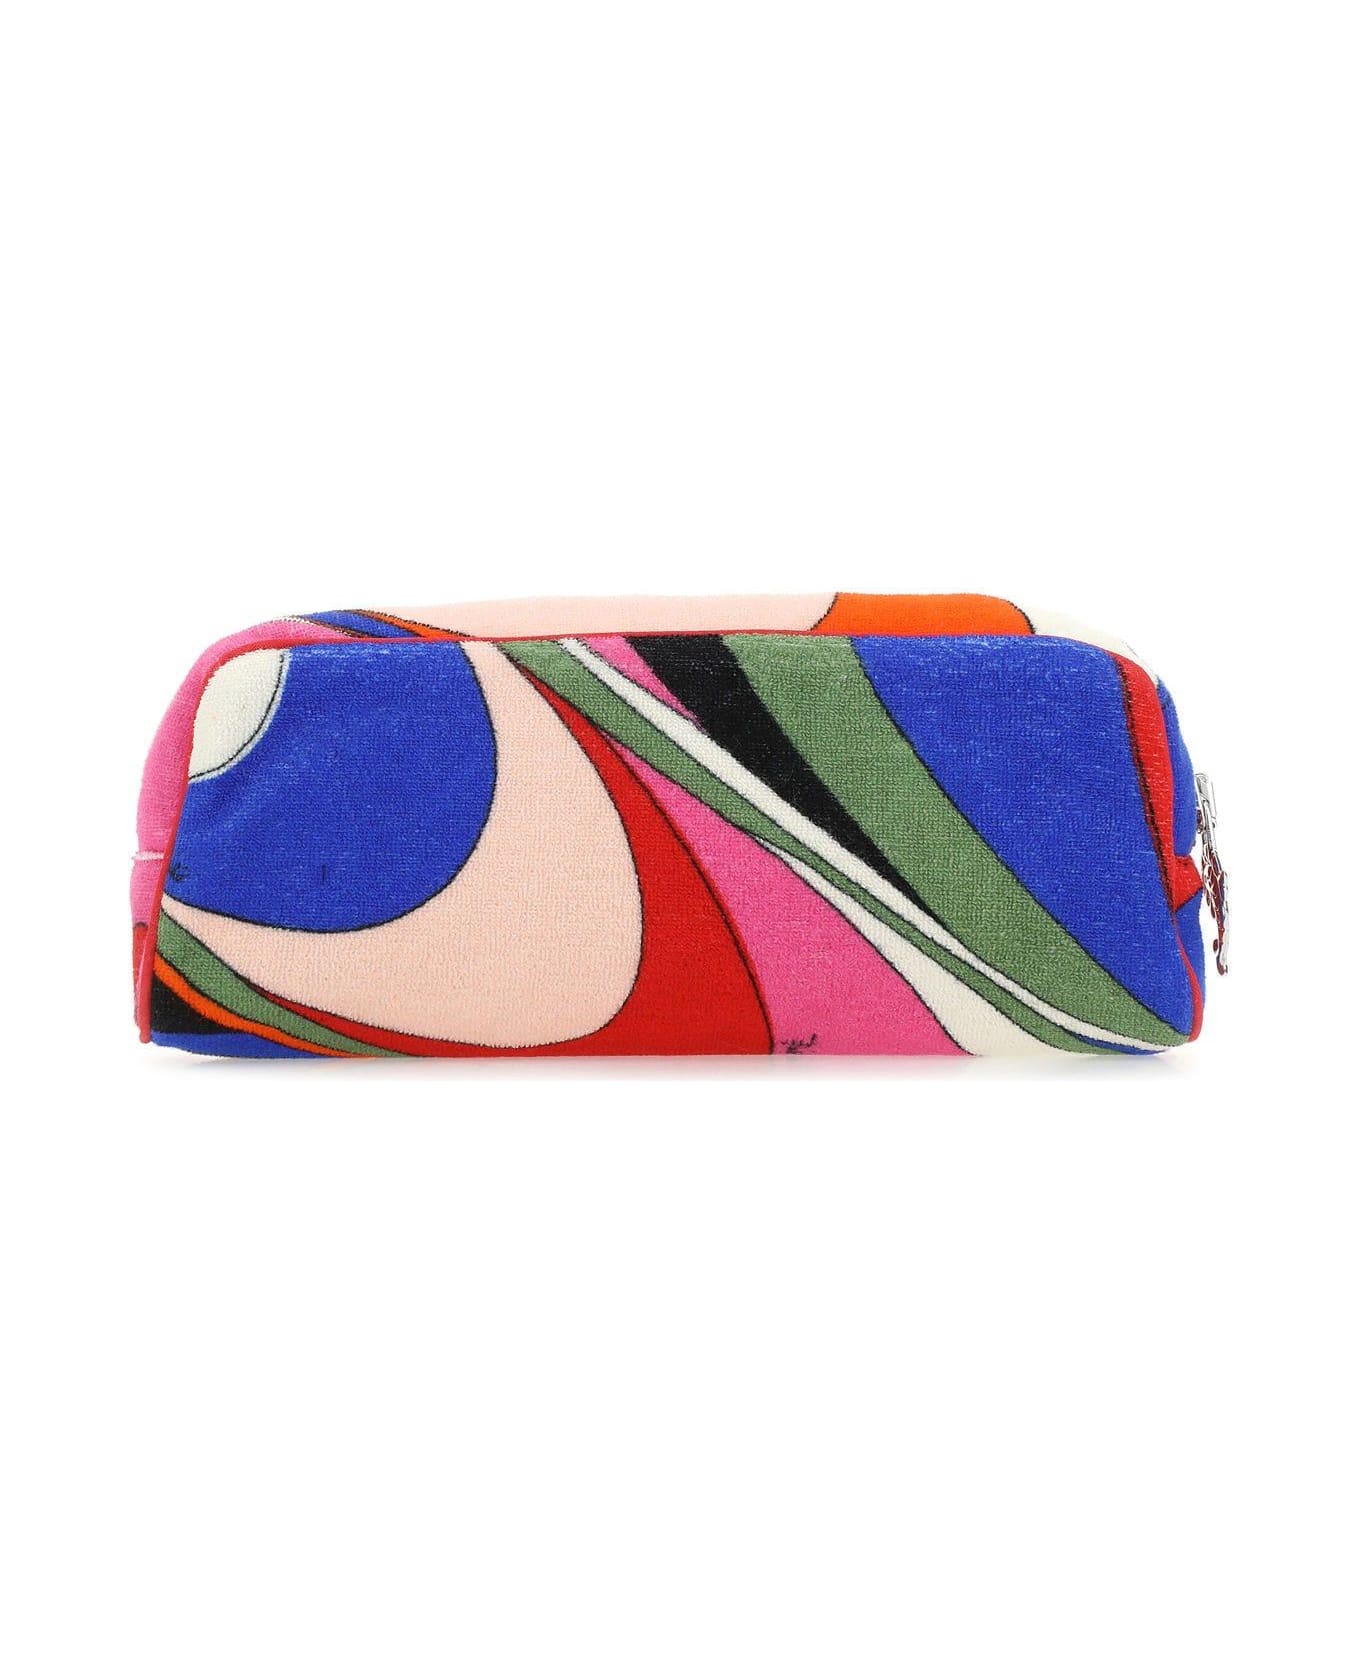 Pucci Multicolor Fabric Beauty Case - Multicolor